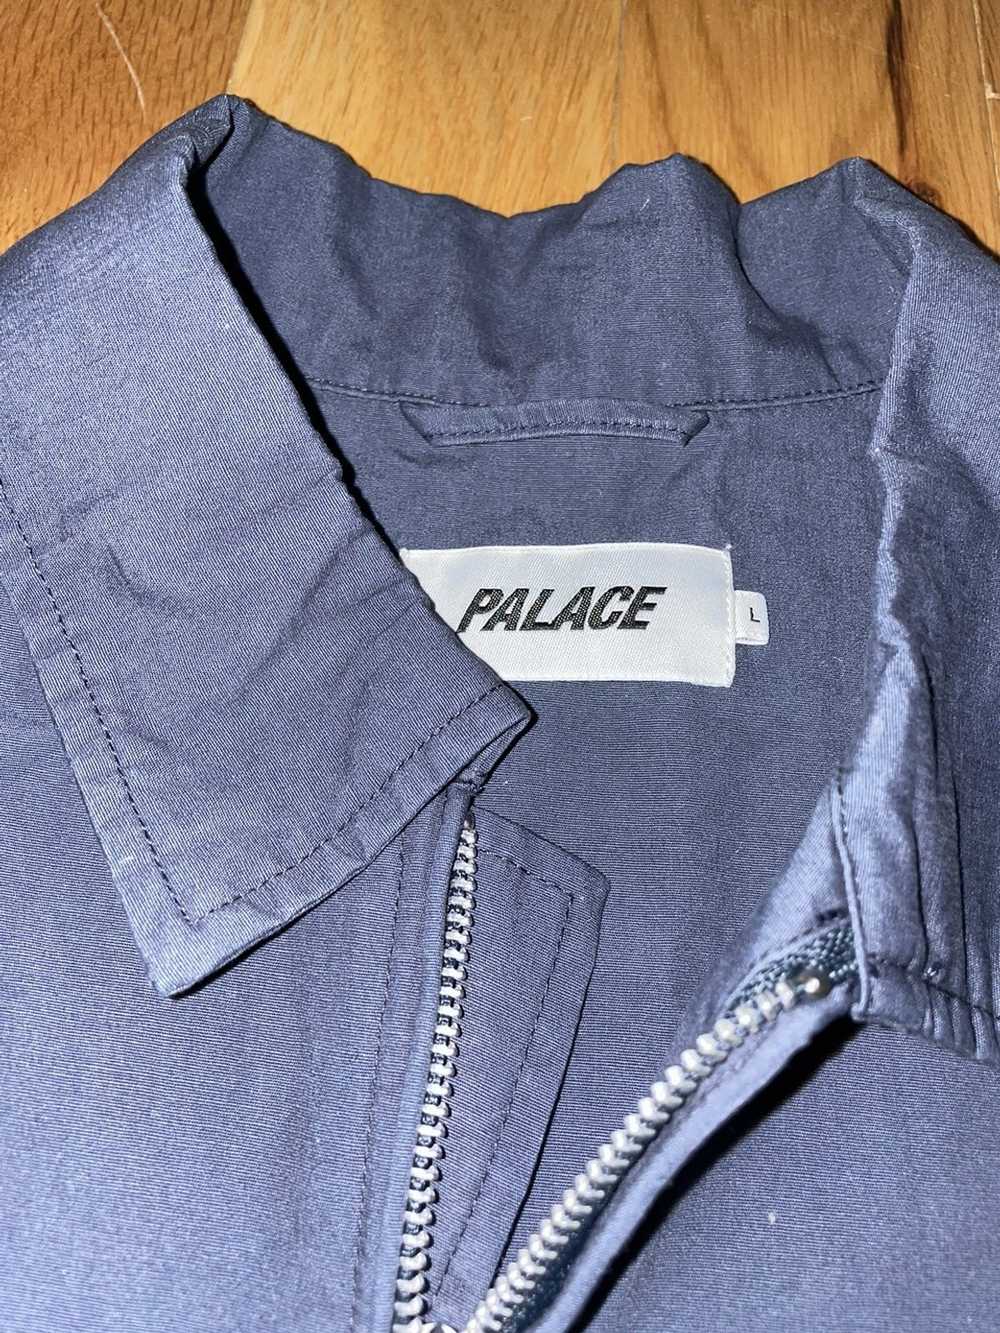 Palace Palace Work Jacket Navy - image 2